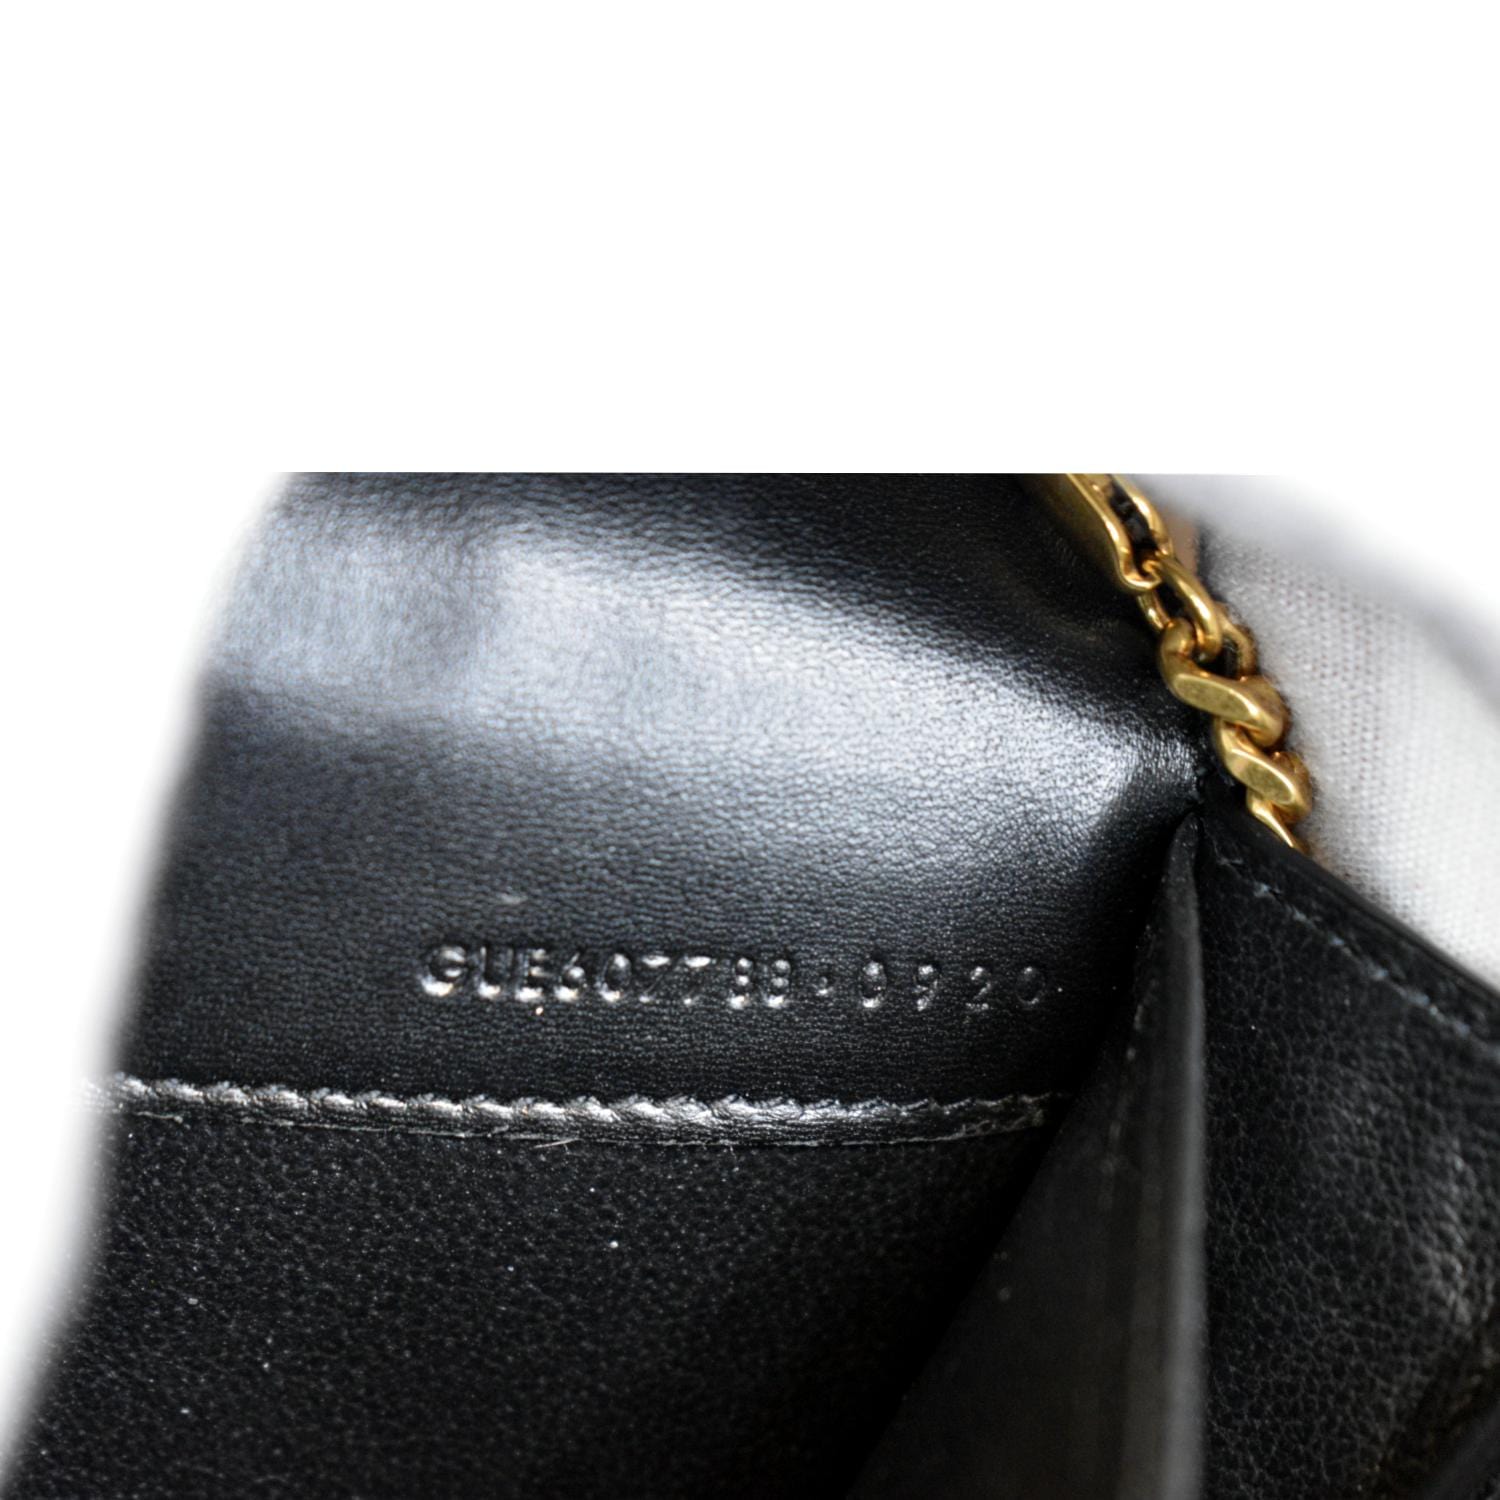 Saint Laurent Uptown Leather Clutch - Black Croc/Gold